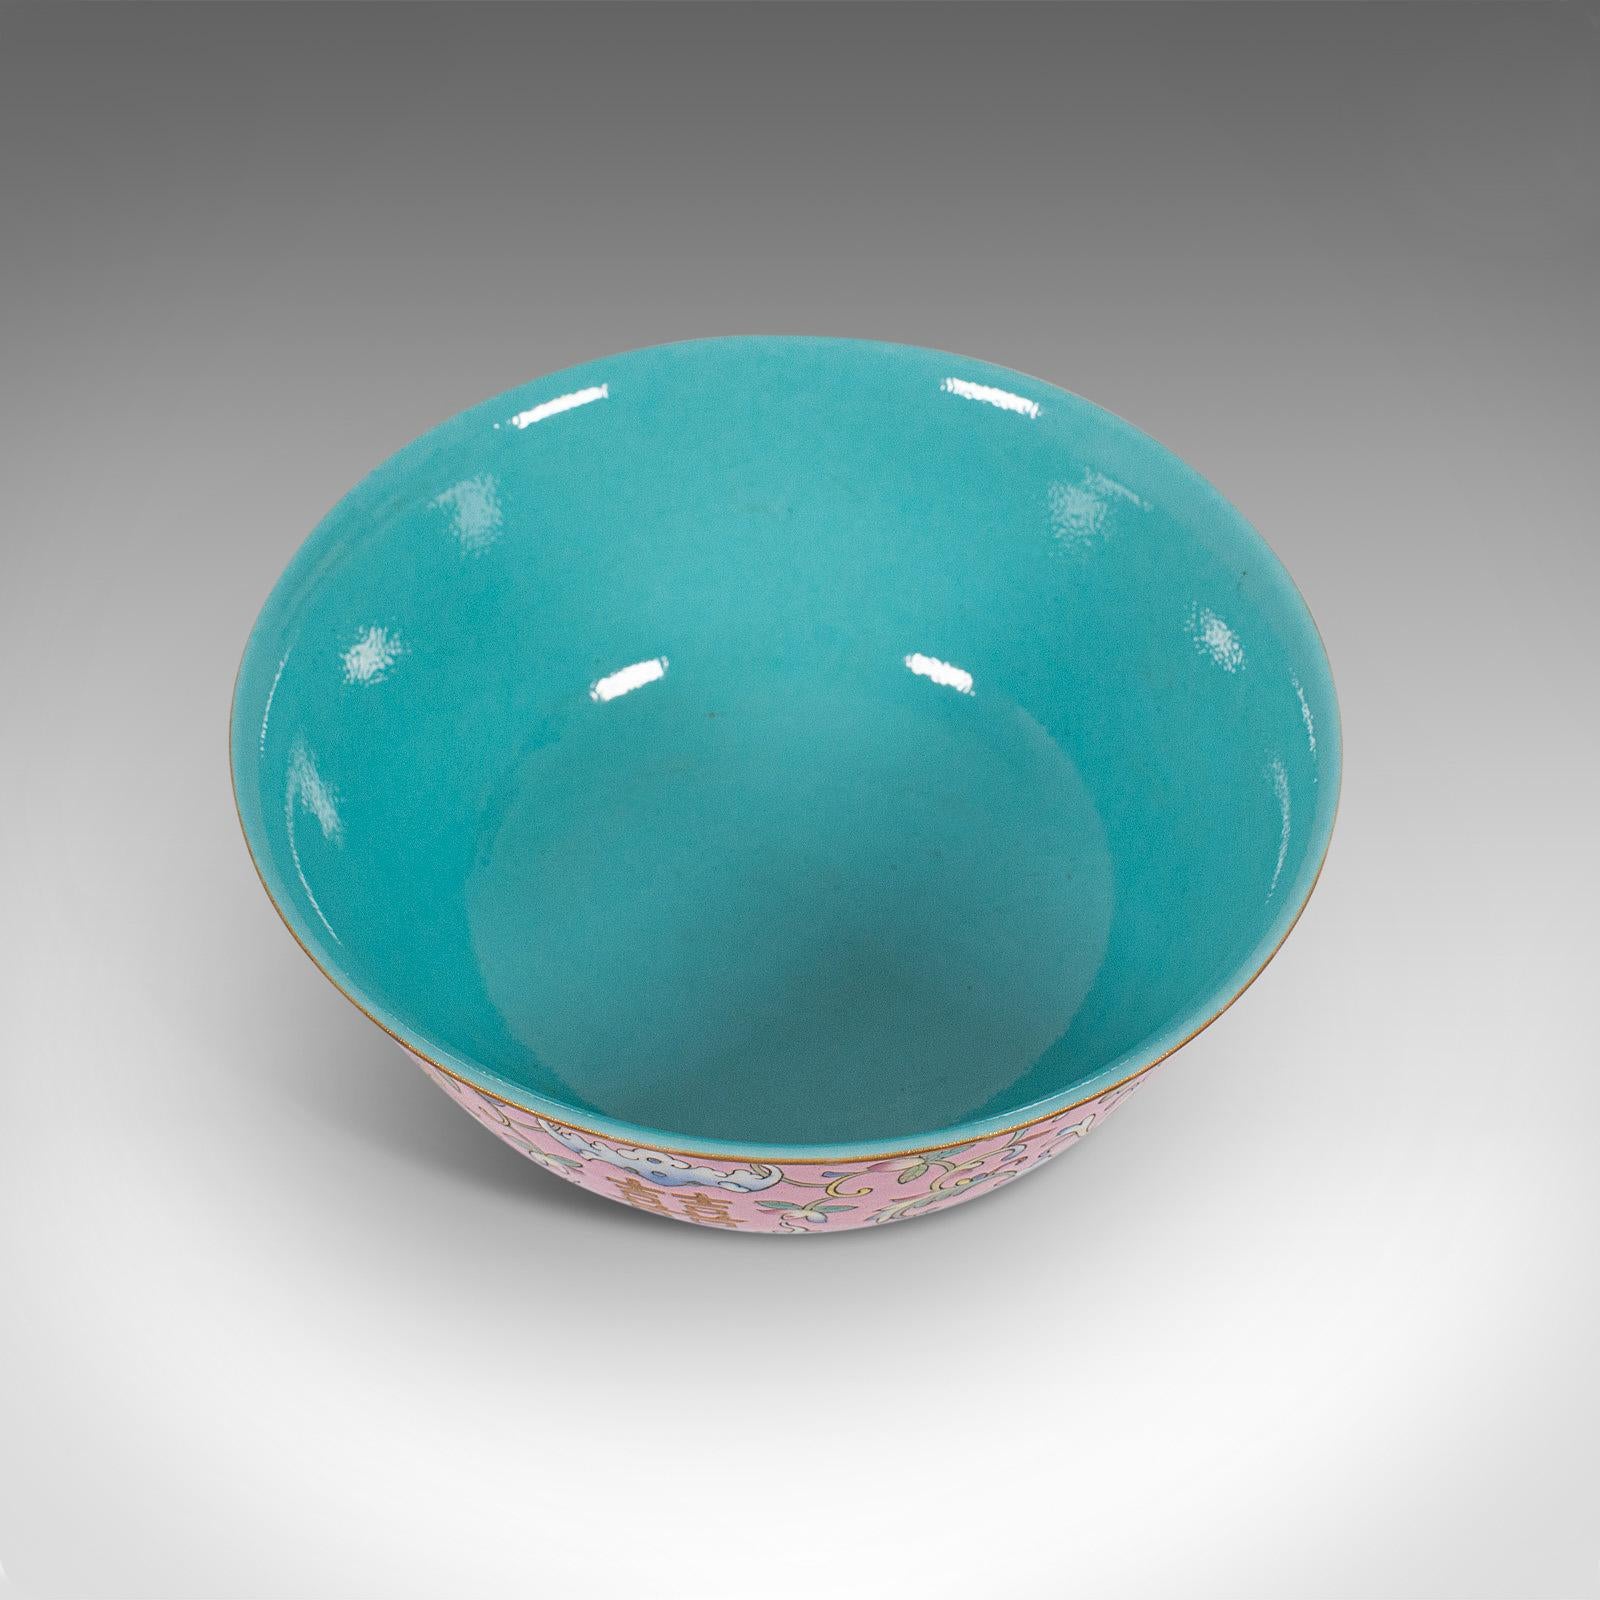 Antique Decorative Marriage Bowl, Chinese, Ceramic, Ceremonial, Dish, circa 1880 4